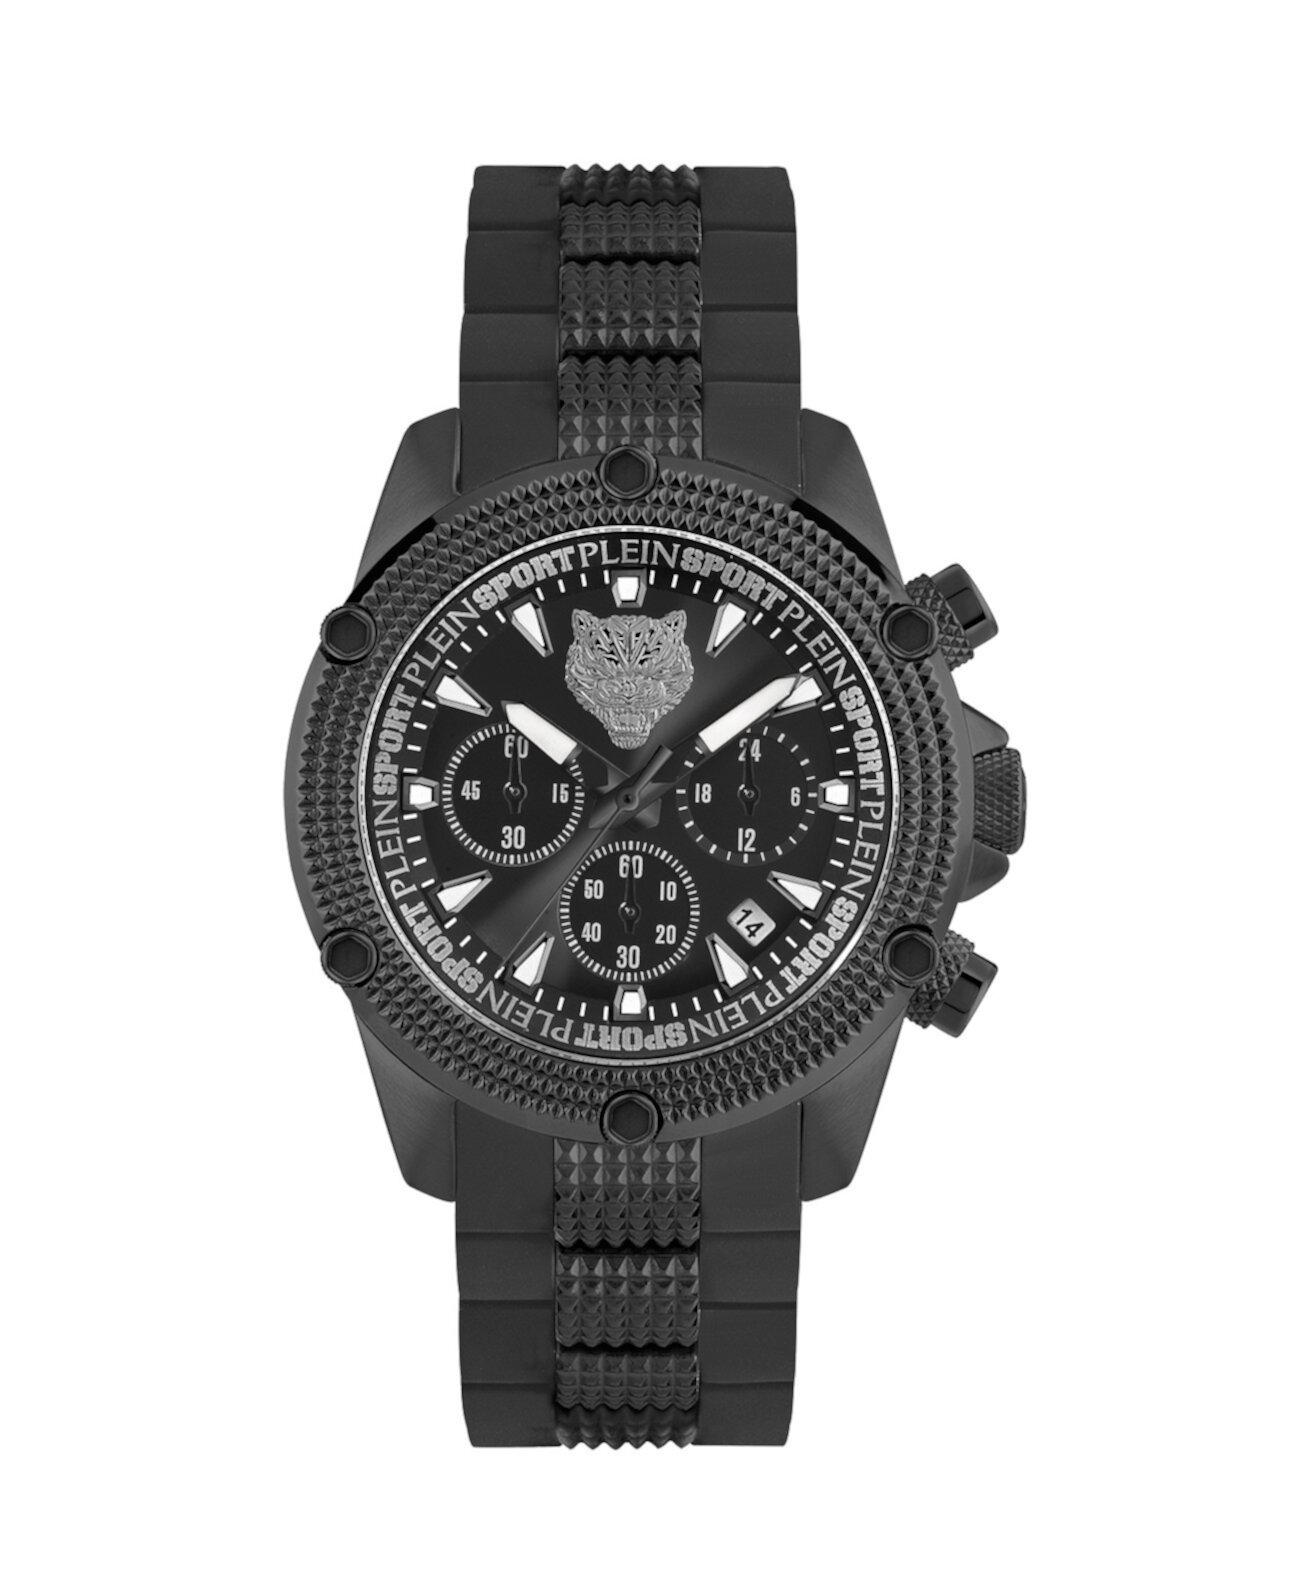 Мужские часы Hurricane, черные часы-браслет из нержавеющей стали, 44 мм Plein Sport